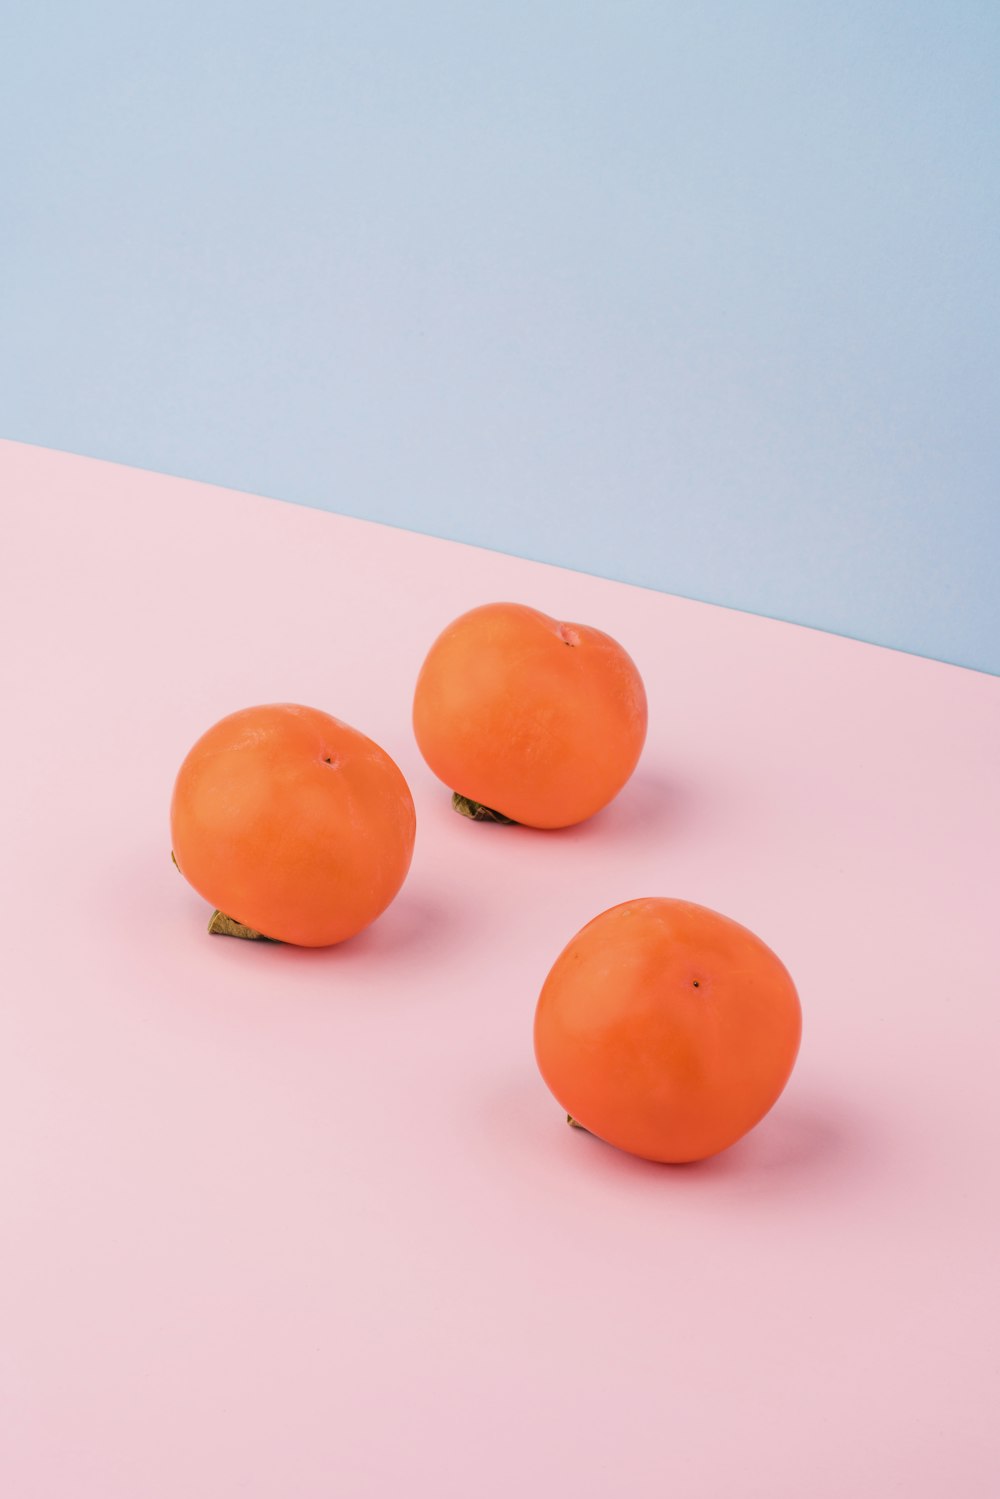 trois fruits orange sur une surface rose